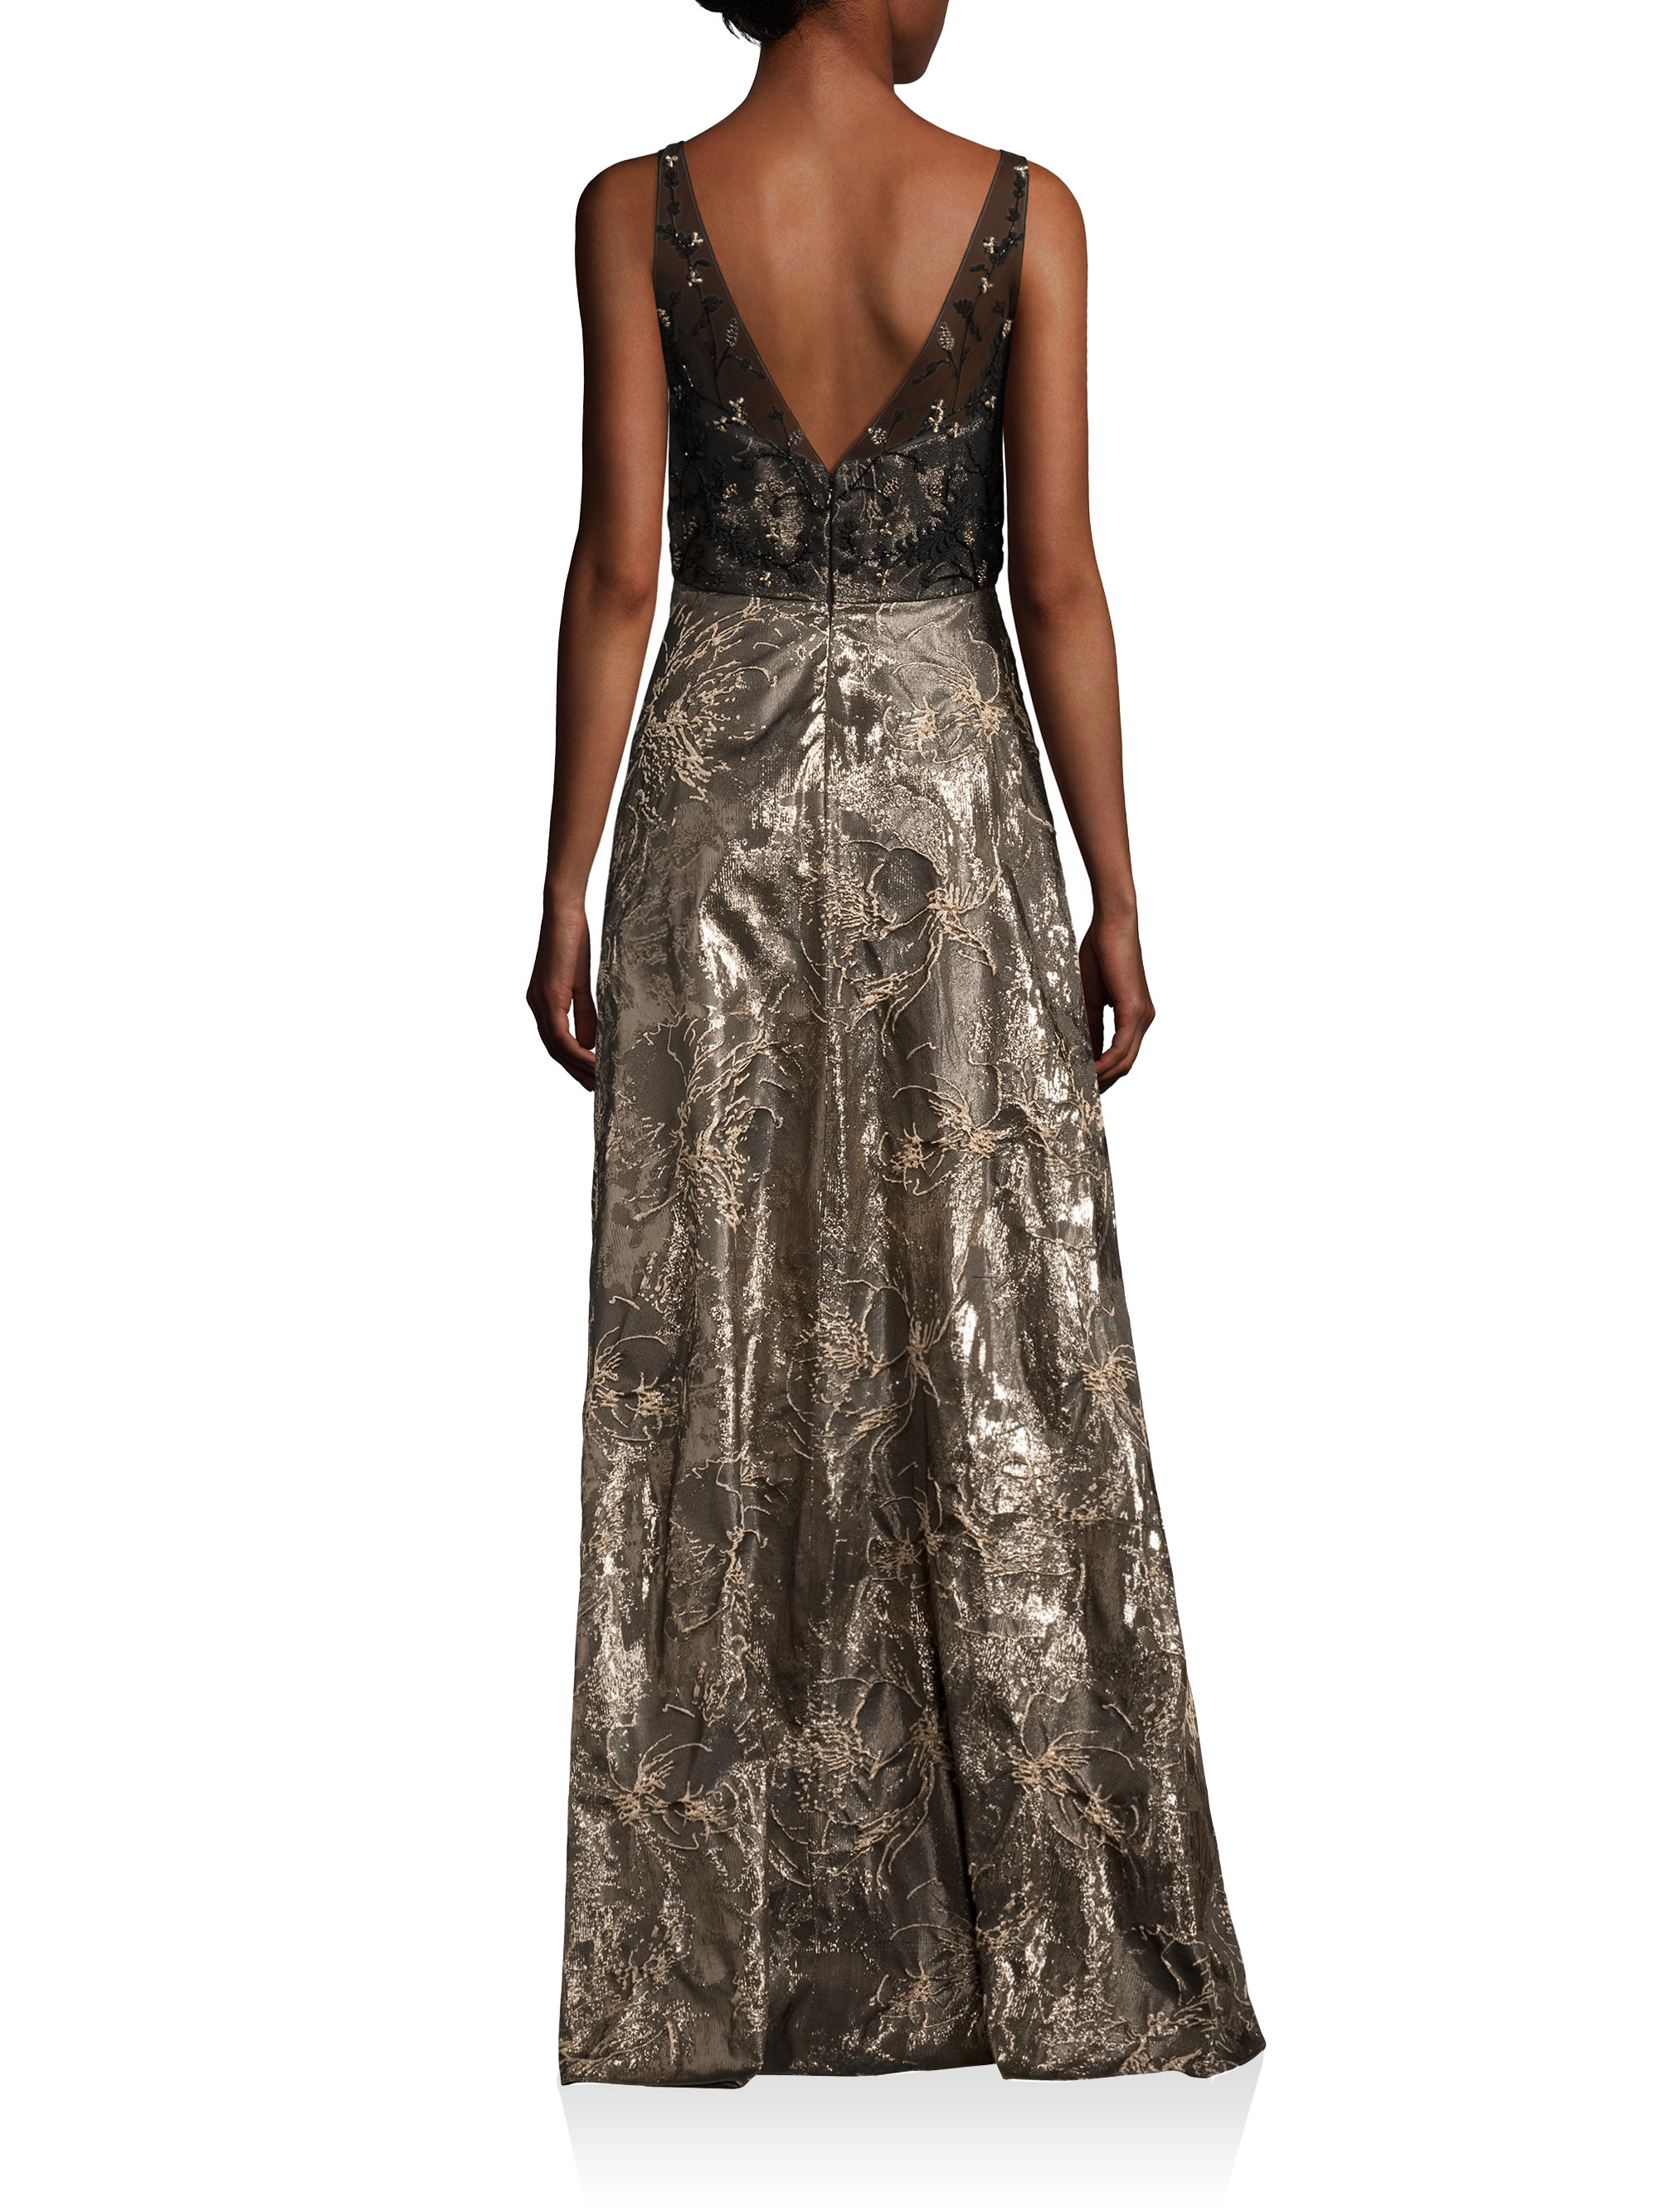 Lyst - Badgley Mischka V-back Metallic Brocade Gown in Metallic